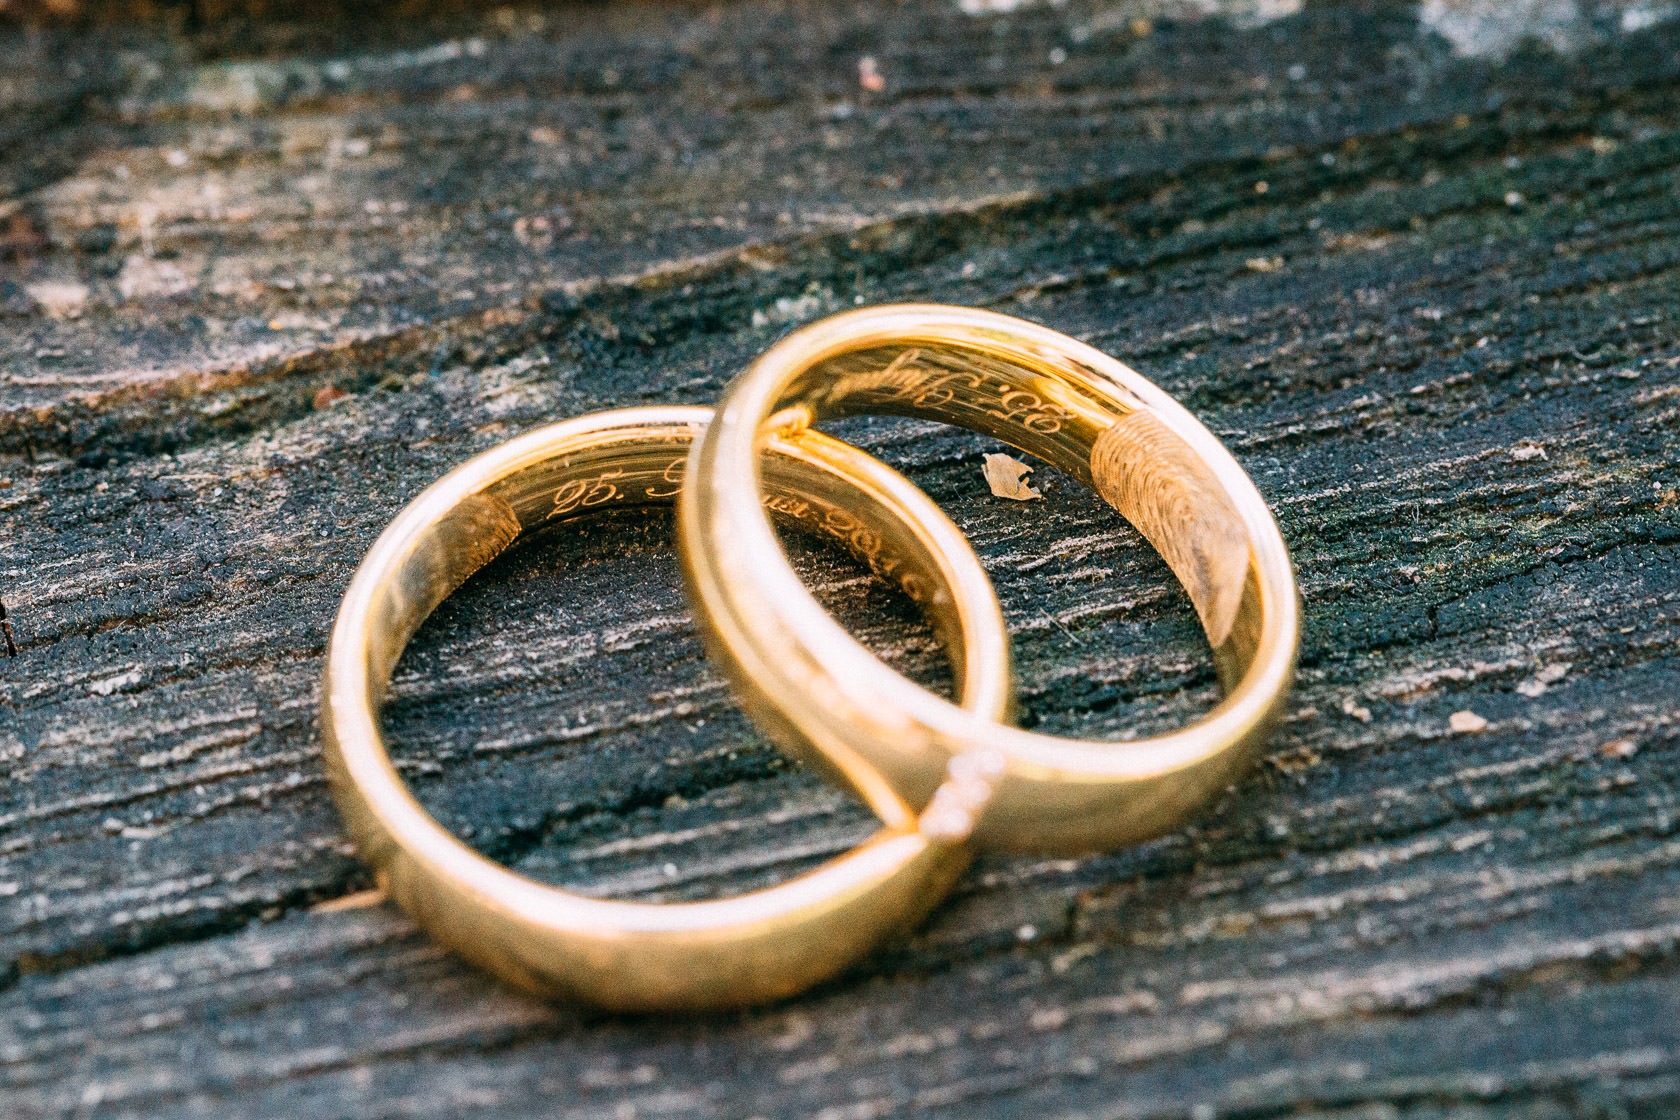 Blauweiße Hochzeit in Bad Kreuznach Paarfotos im Kurpark Details Ringe und Brautstrauß Gold Ehering